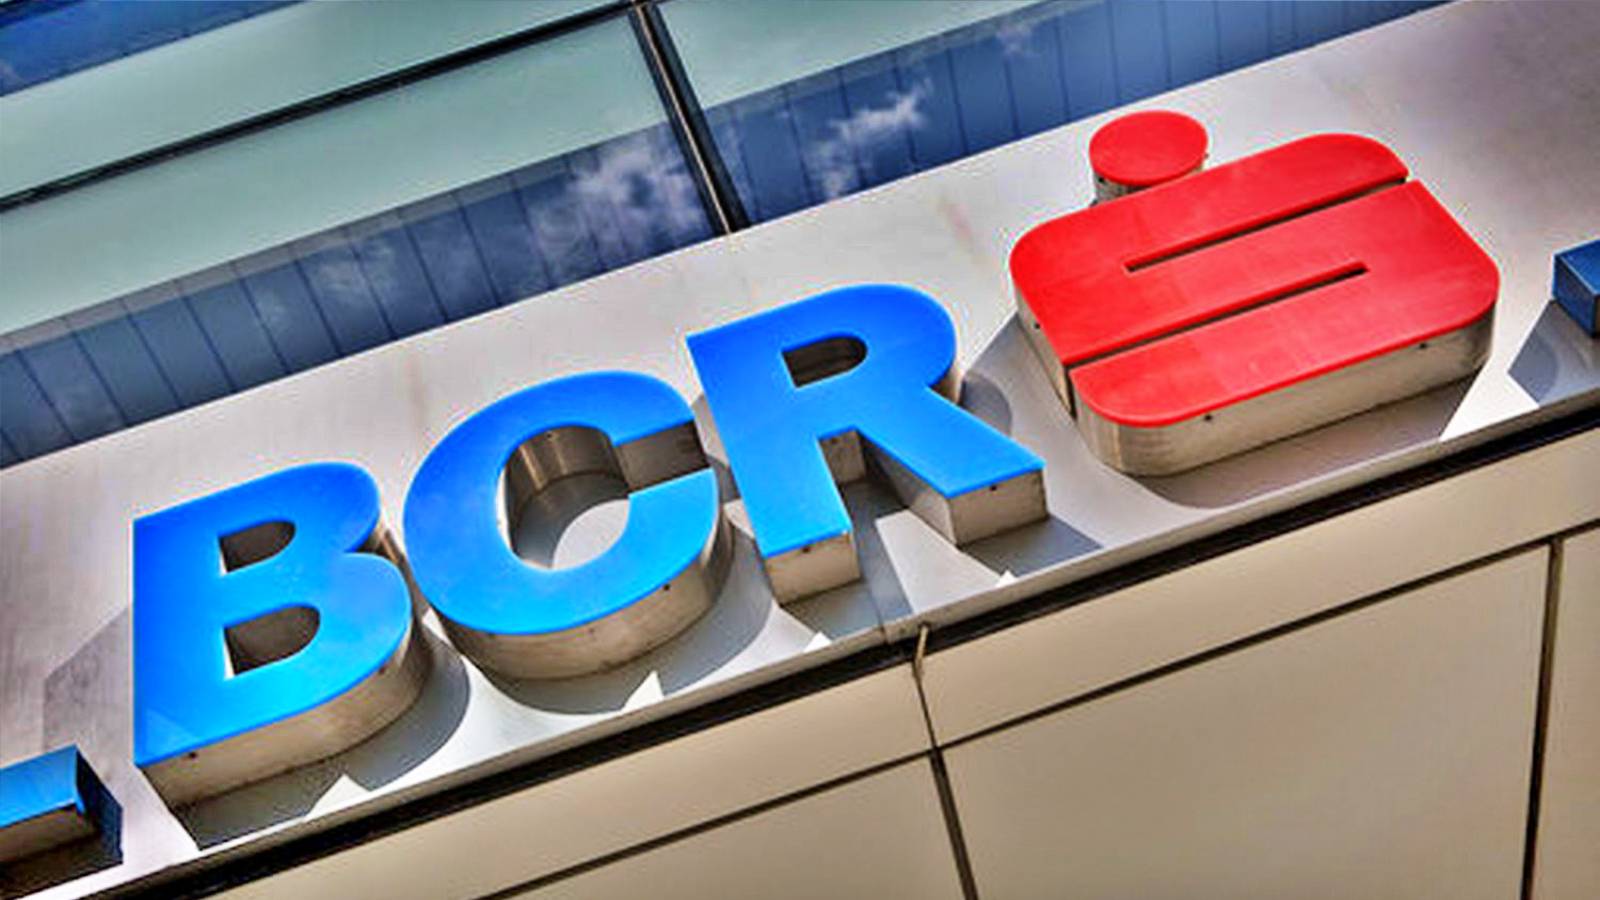 BCR Roumanie Clients Instruits Mesure Extrêmement IMPORTANTE Prise par la Banque